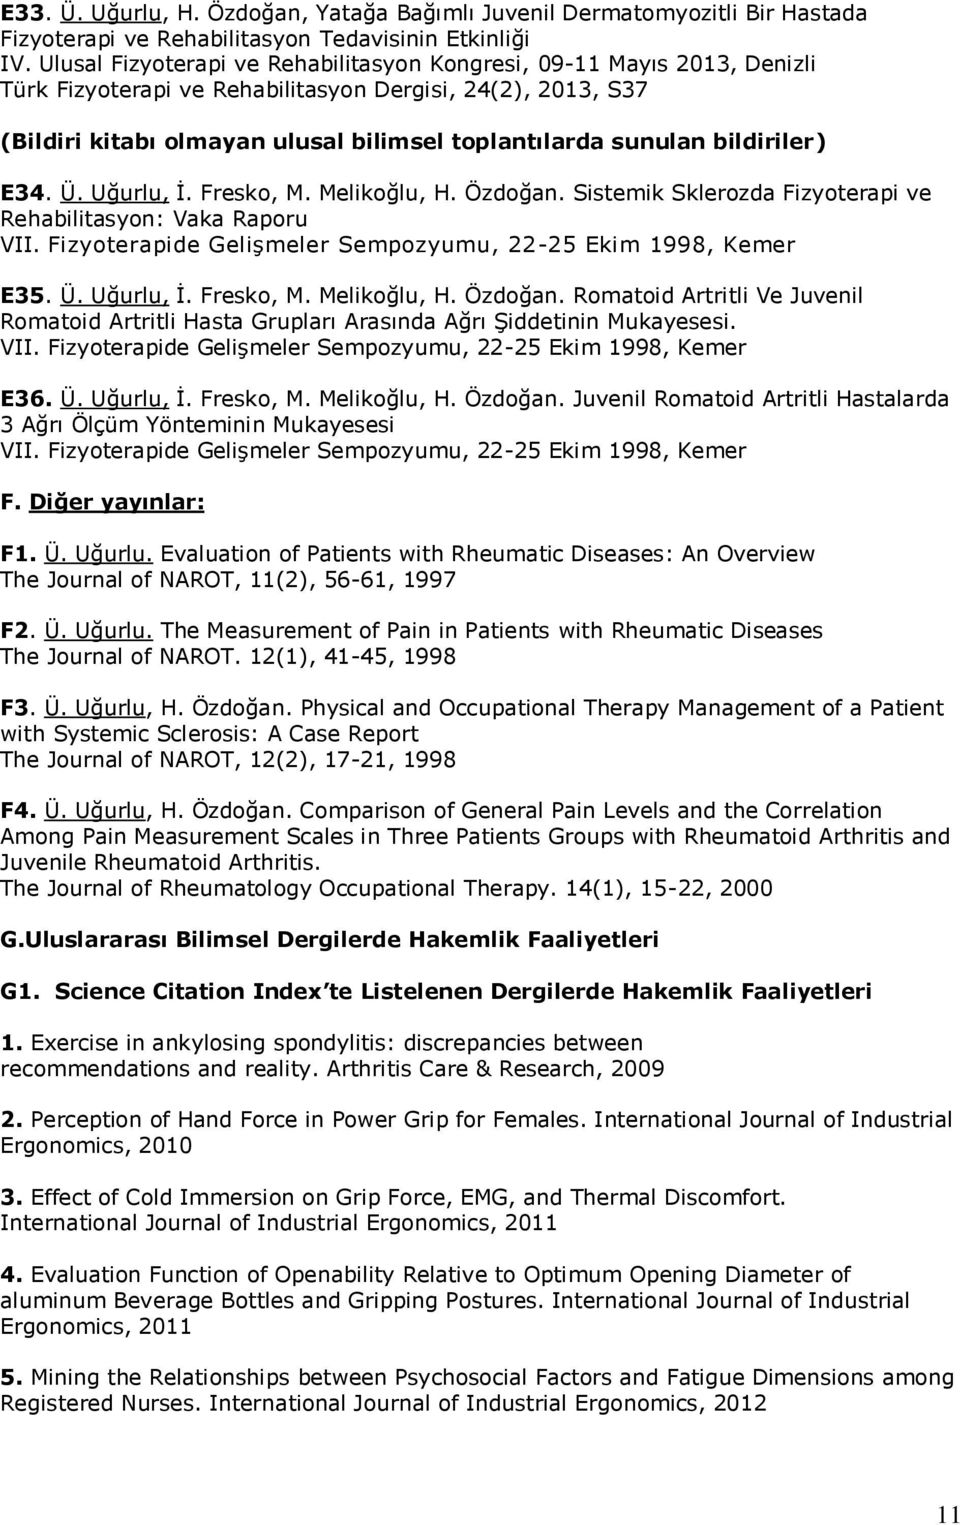 bildiriler) E34. Ü. Uğurlu, İ. Fresko, M. Melikoğlu, H. Özdoğan. Sistemik Sklerozda Fizyoterapi ve Rehabilitasyon: Vaka Raporu VII. Fizyoterapide Gelişmeler Sempozyumu, 22-25 Ekim 1998, Kemer E35. Ü. Uğurlu, İ. Fresko, M. Melikoğlu, H. Özdoğan. Romatoid Artritli Ve Juvenil Romatoid Artritli Hasta Grupları Arasında Ağrı Şiddetinin Mukayesesi.